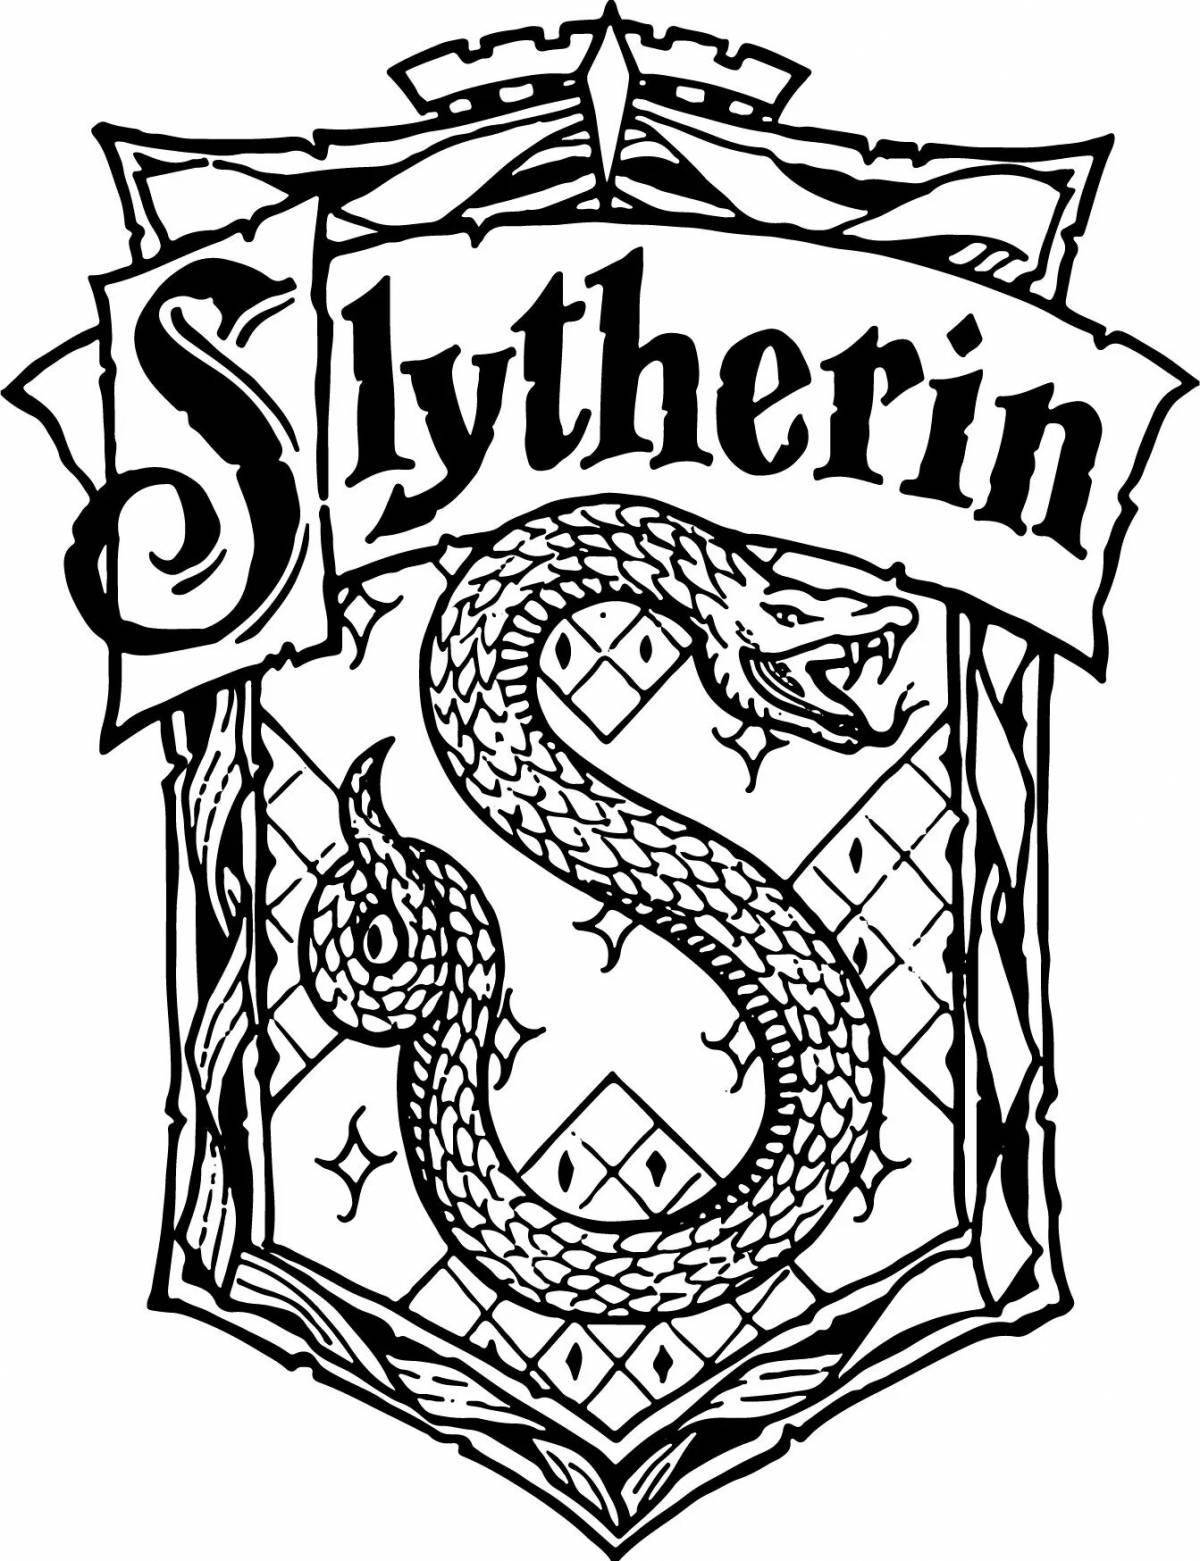 Slytherin #2